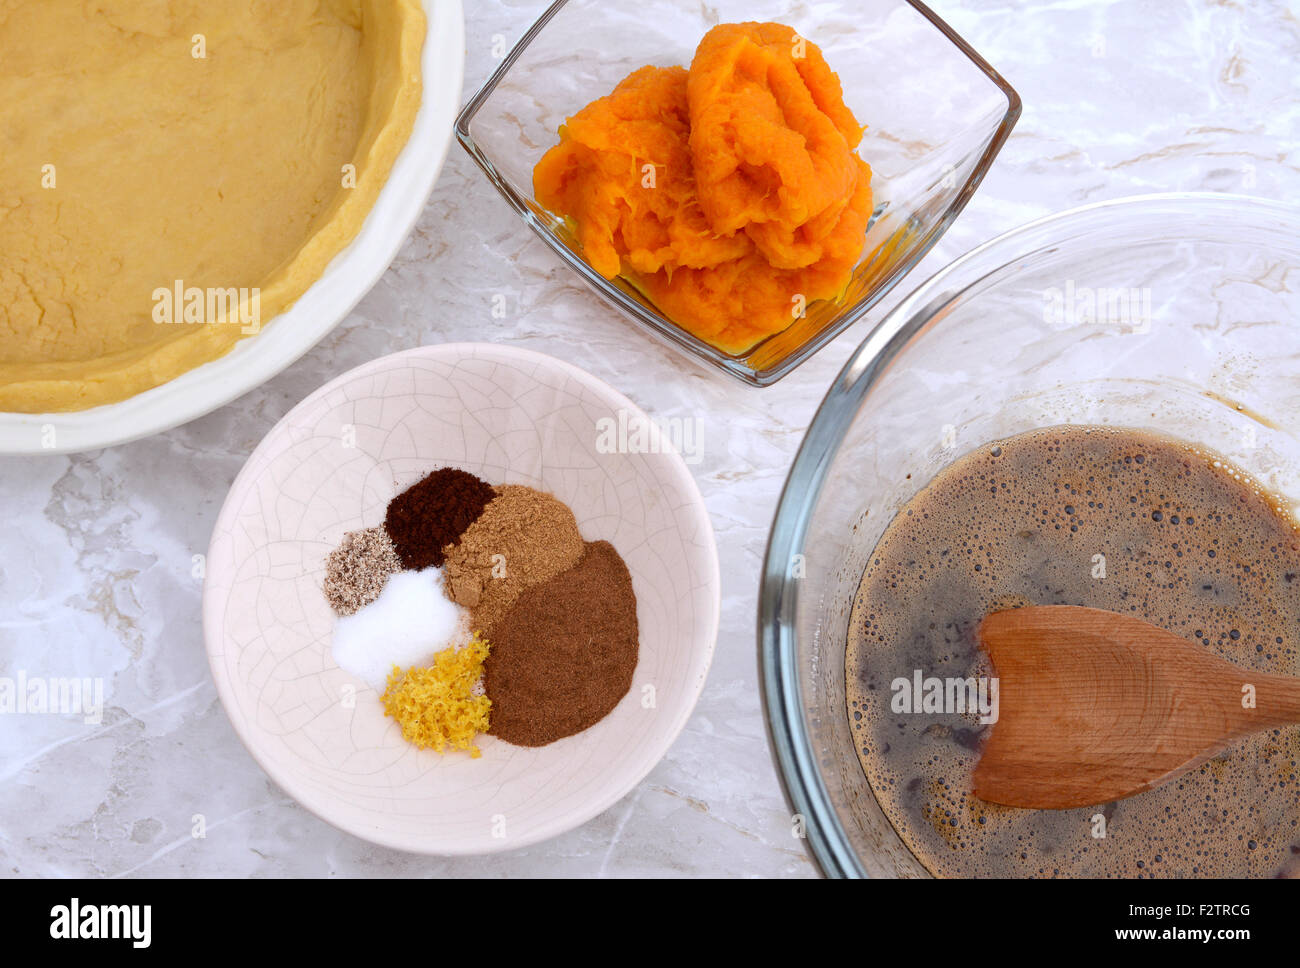 Tarte à la citrouille en pâte brisée - cas, purée de potiron, les épices et l'oeuf et le sucre mélanger Banque D'Images